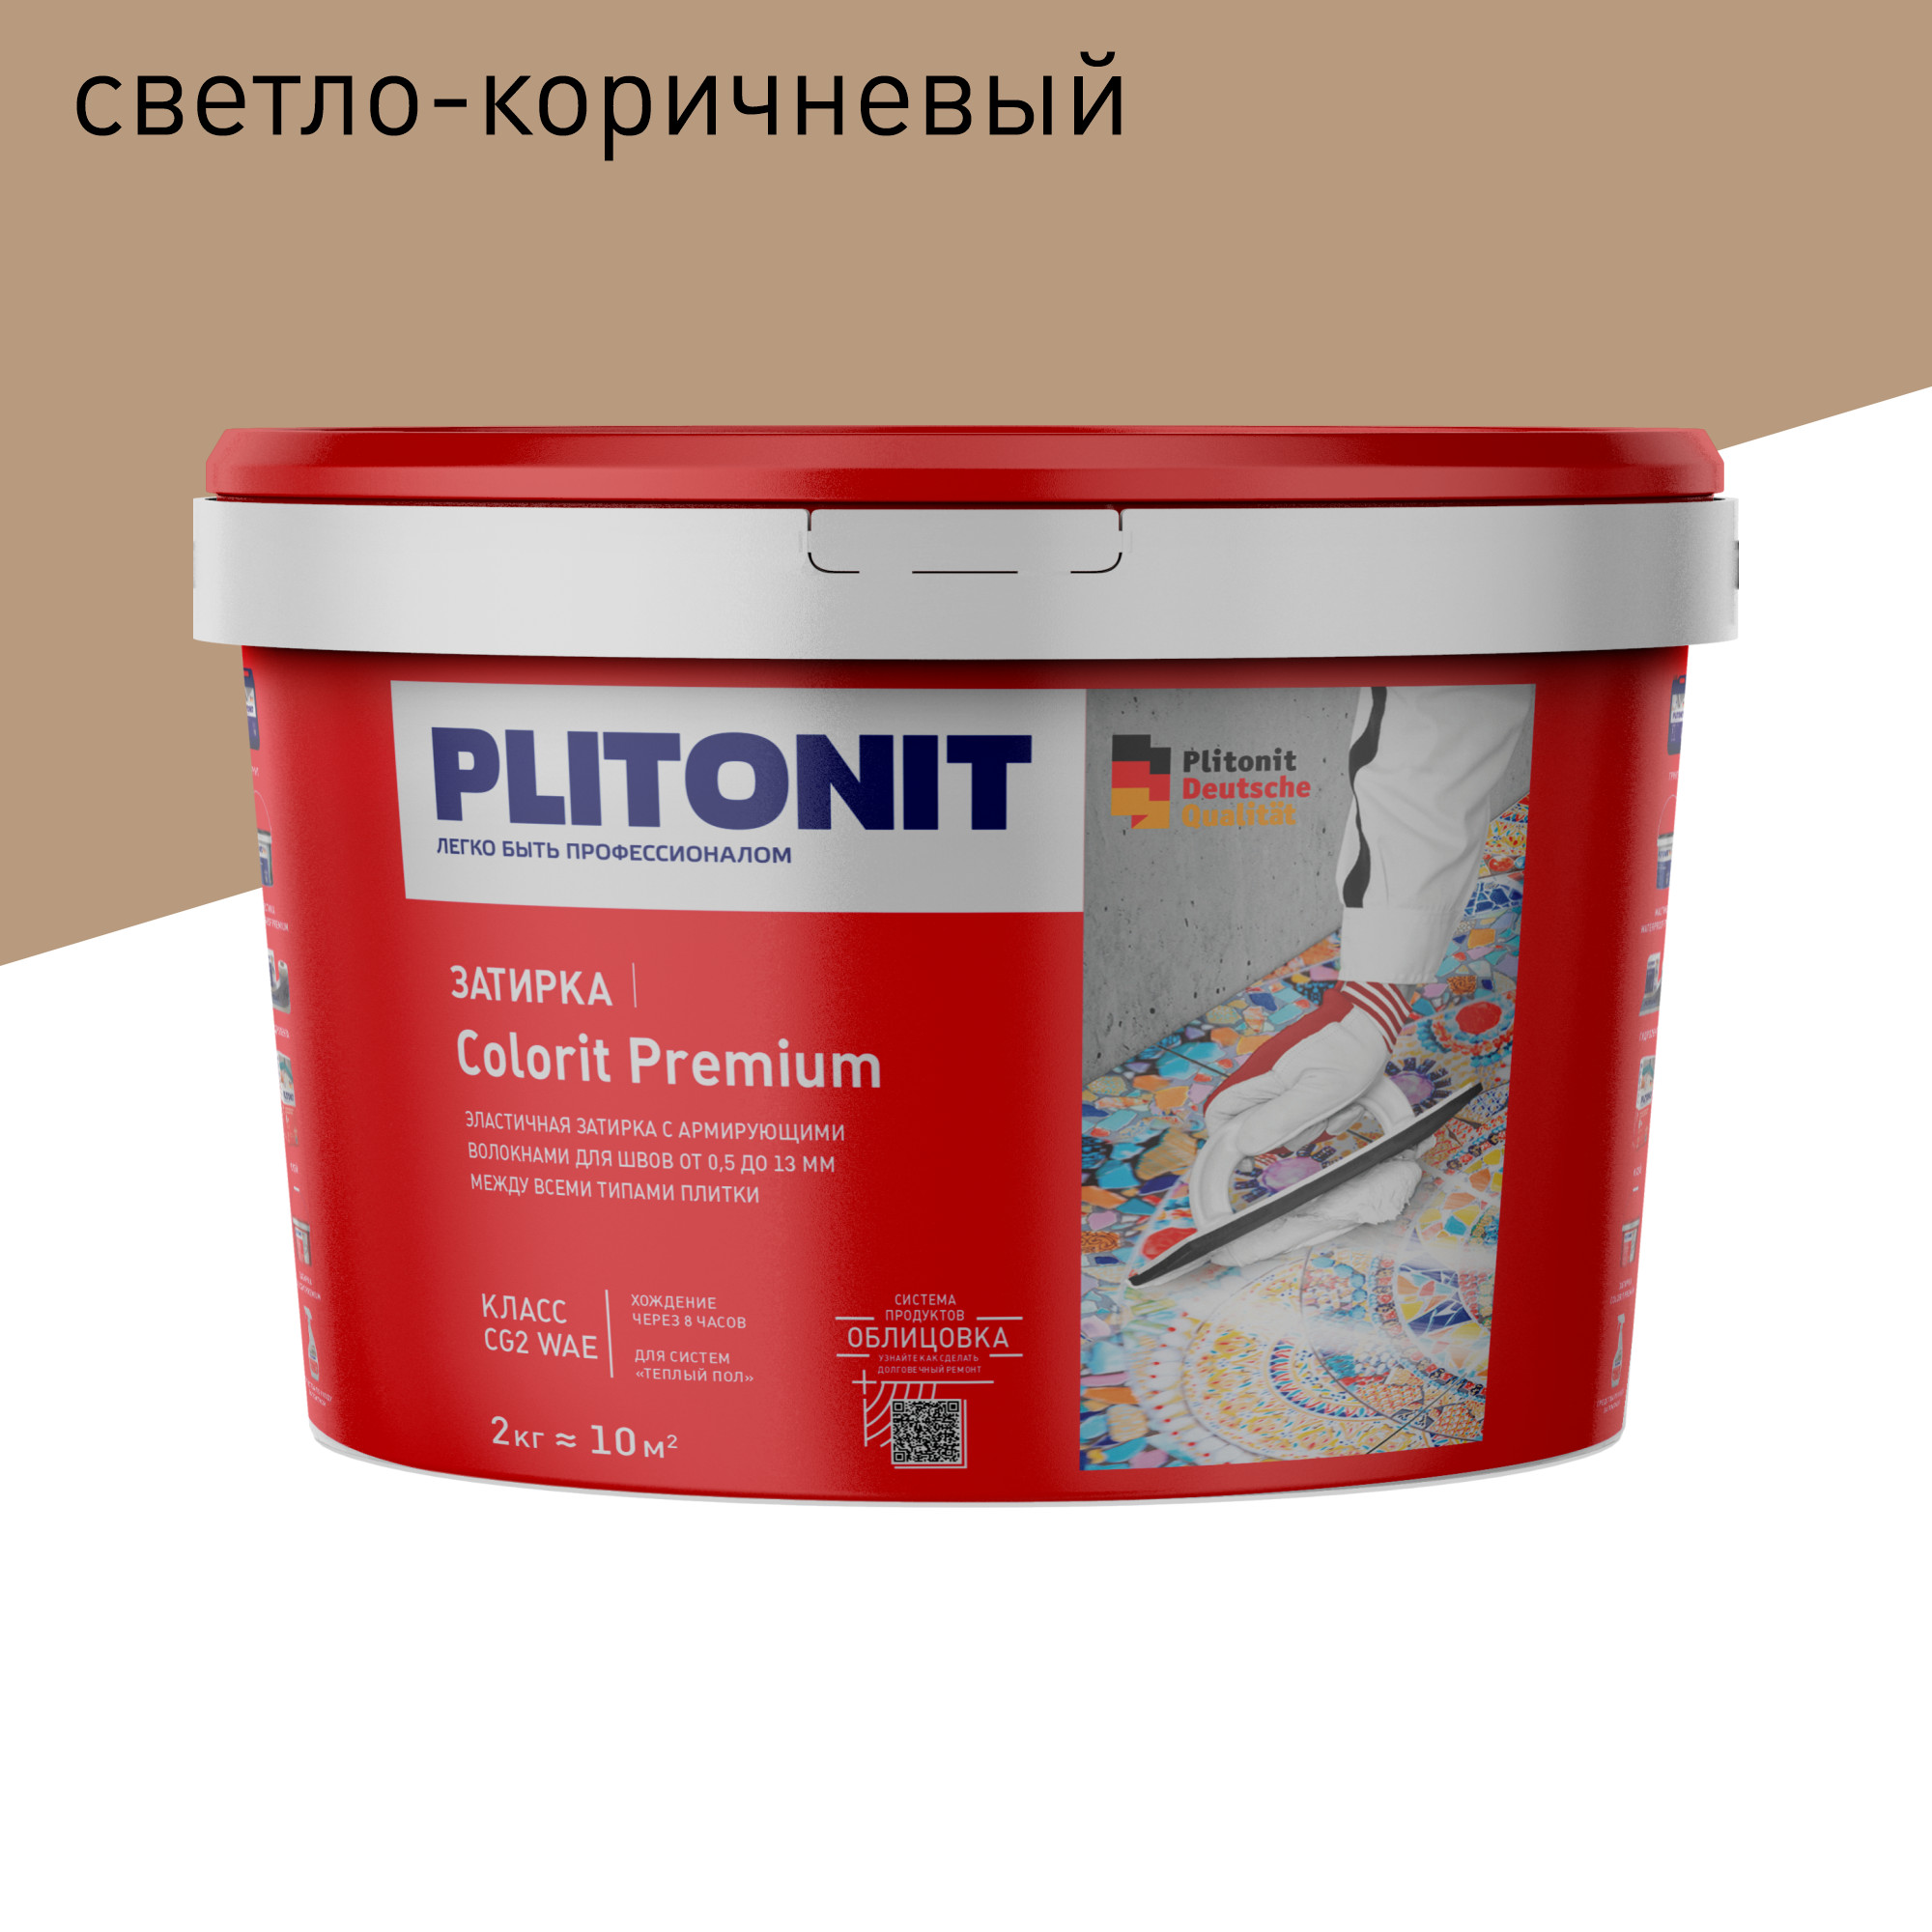 Затирка PLITONIT Colorit Premium светло-коричневая 2 кг petline pea 03 ринговка с кольцом светло коричневая